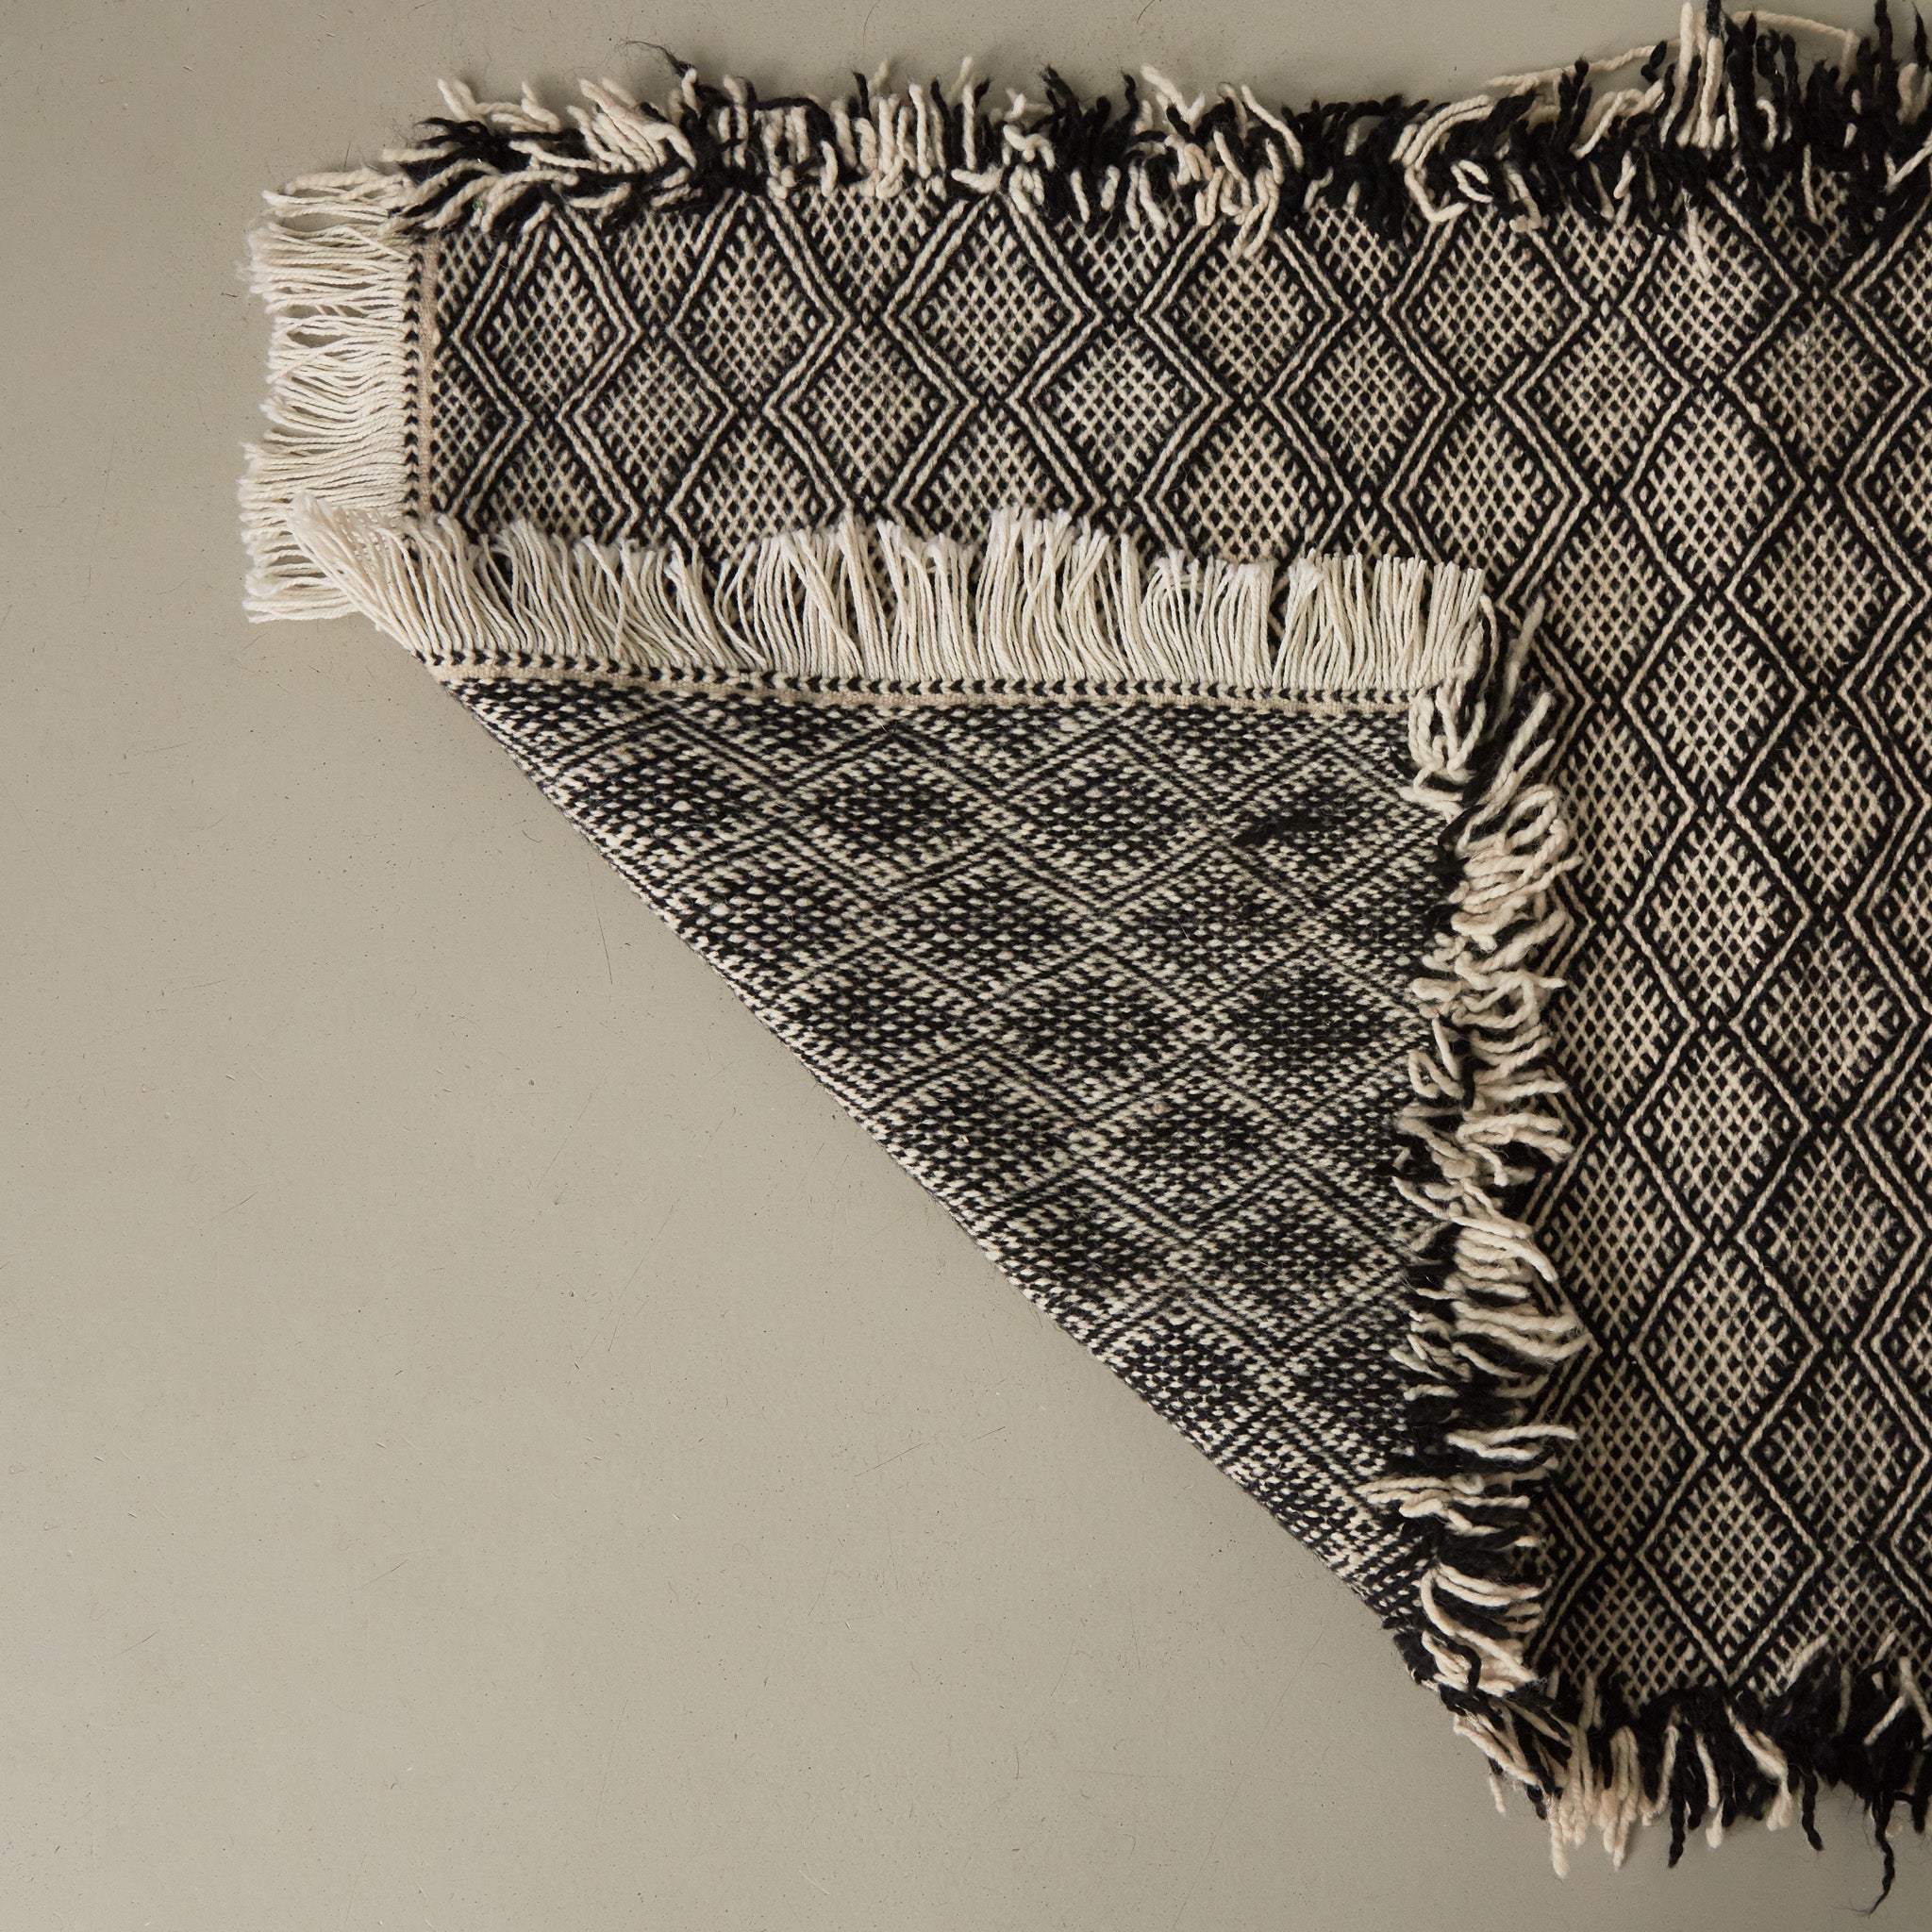 dettaglio del retro di un tappeto zanafi passatioa stile kilim realizzato intrecciando lana bianca e nera